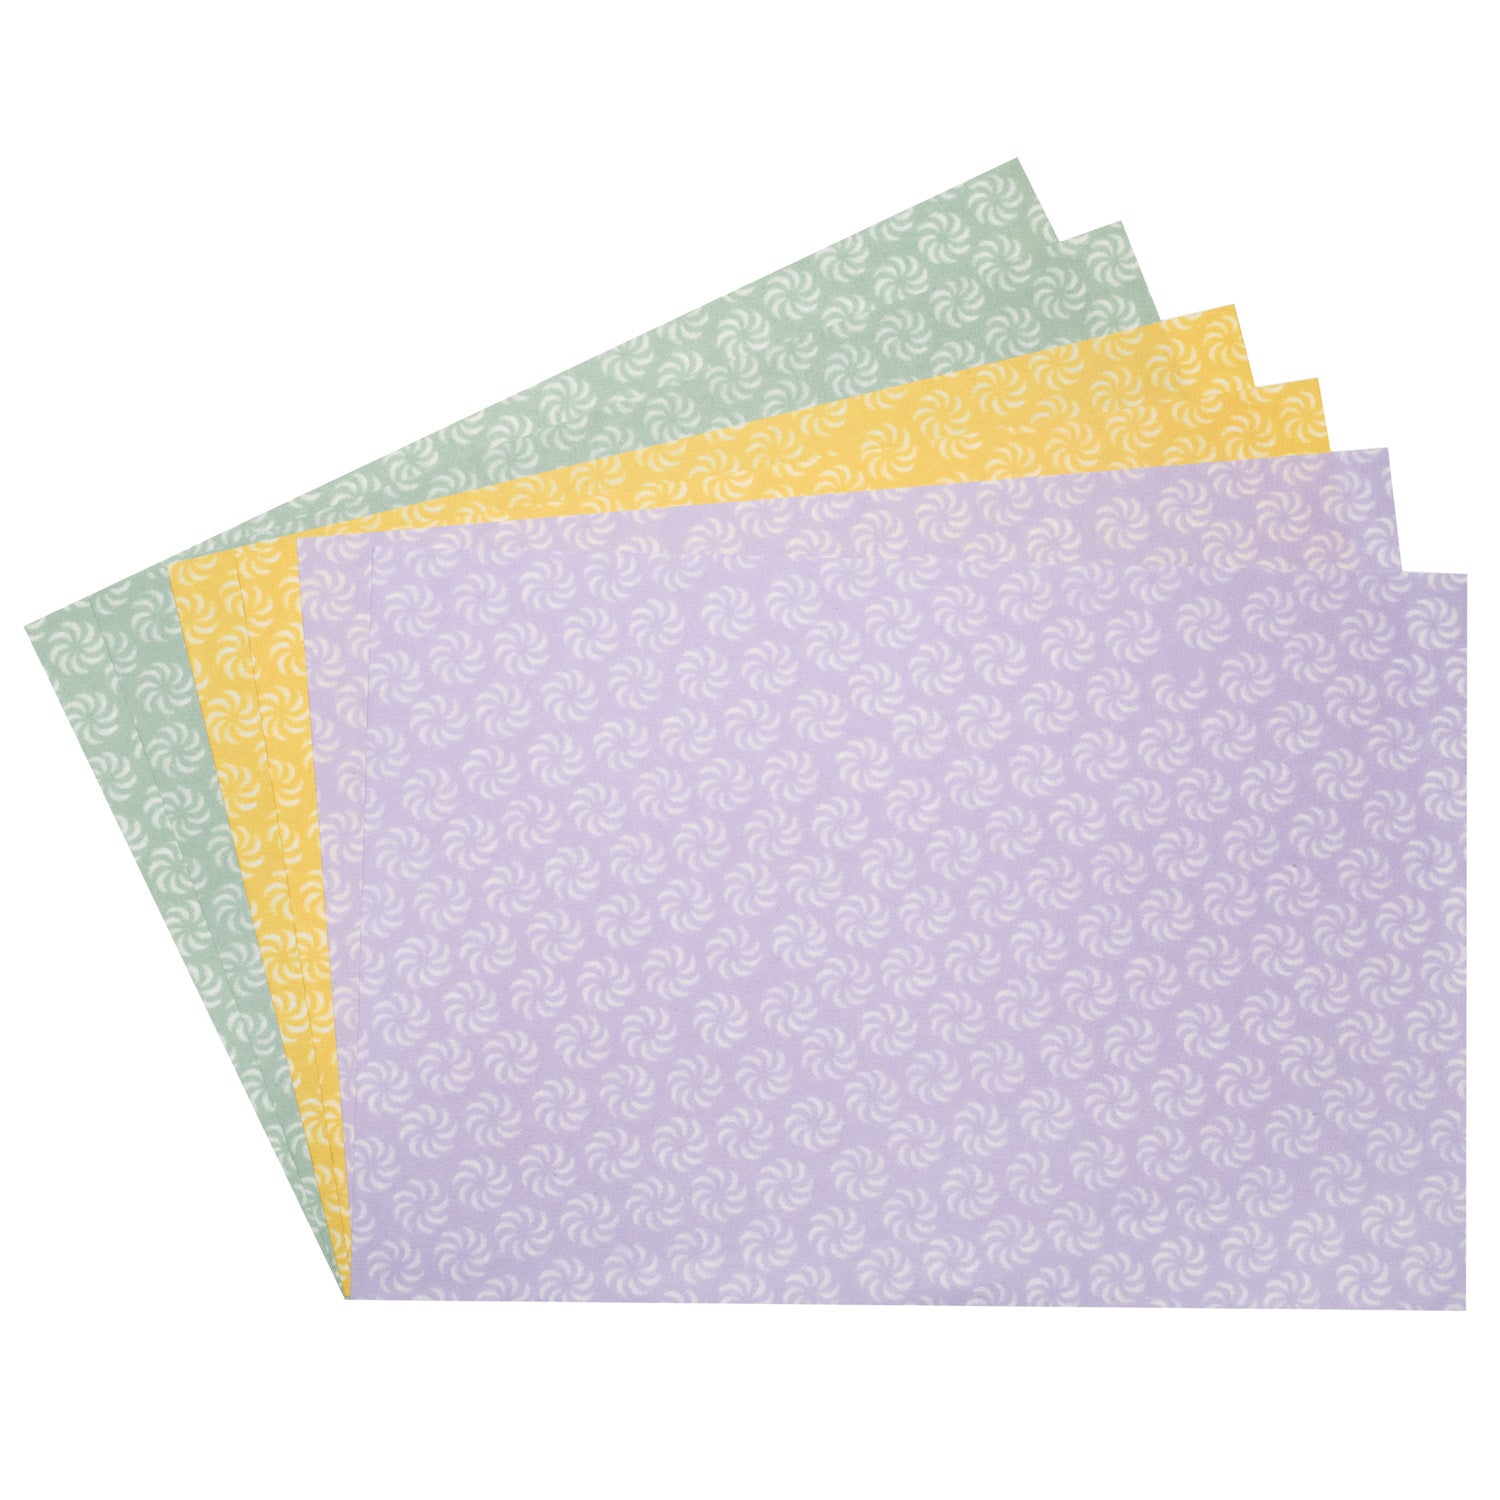 Komon Craft Sheets Pack 6 Echizen Washi Paper open